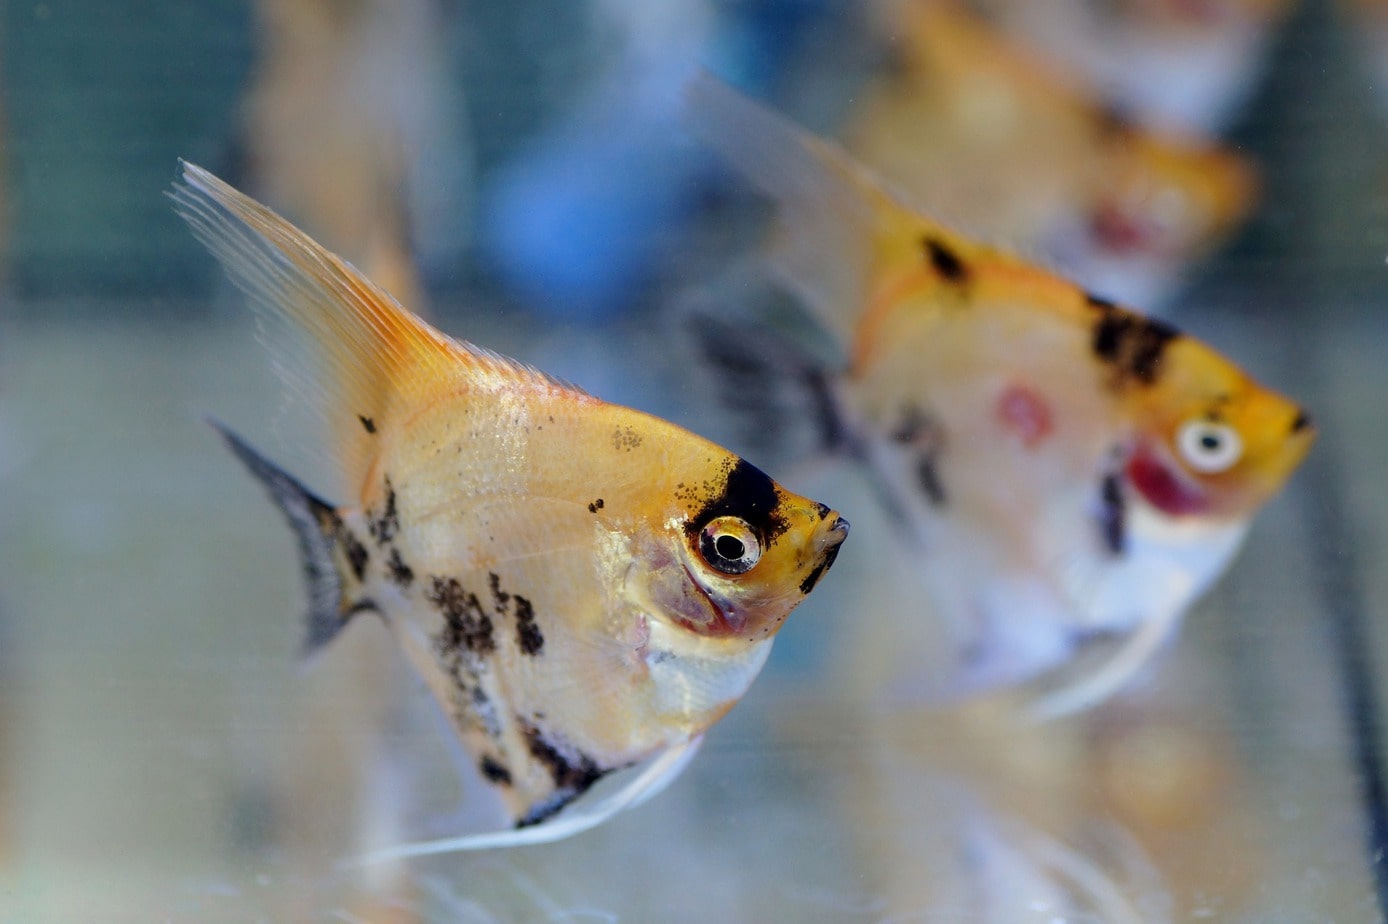 Schooling fish in an aquarium